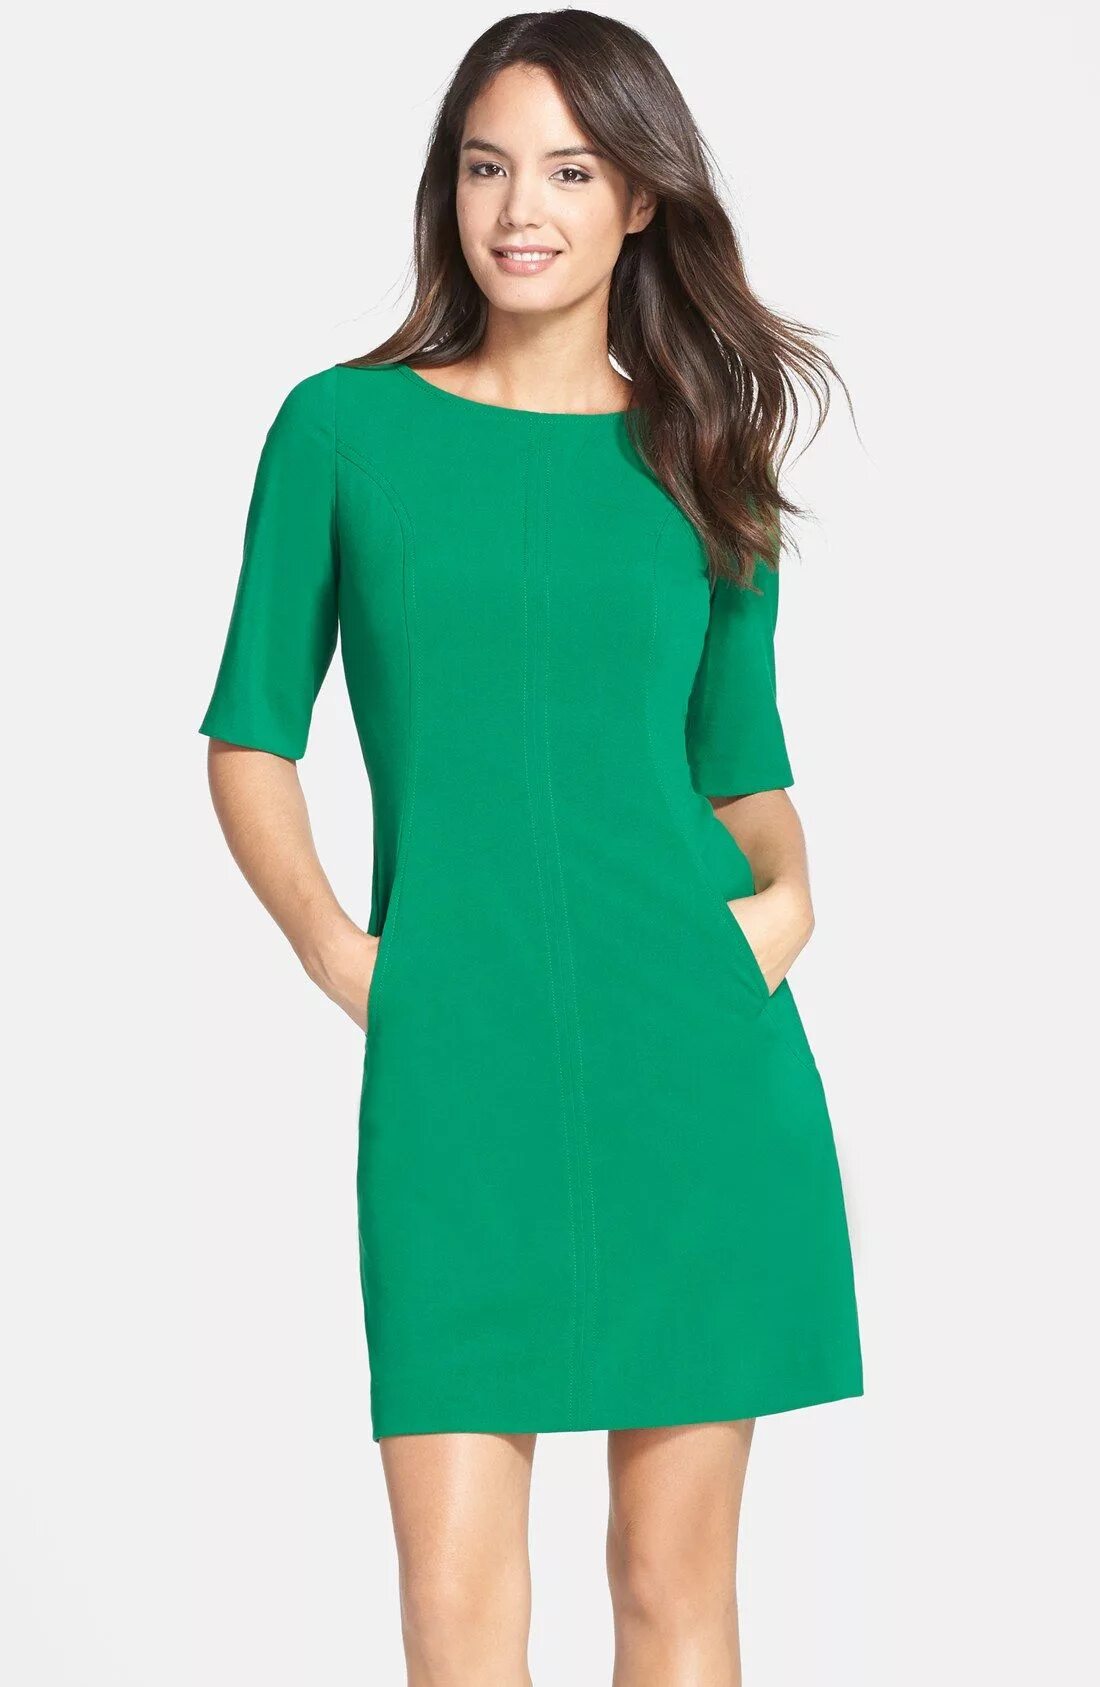 Lines платья. Зеленое платье Повседневное. Зеленое платье с квадратным вырезом. Повседневное зеленое платье женское. Модель в зеленом платье.